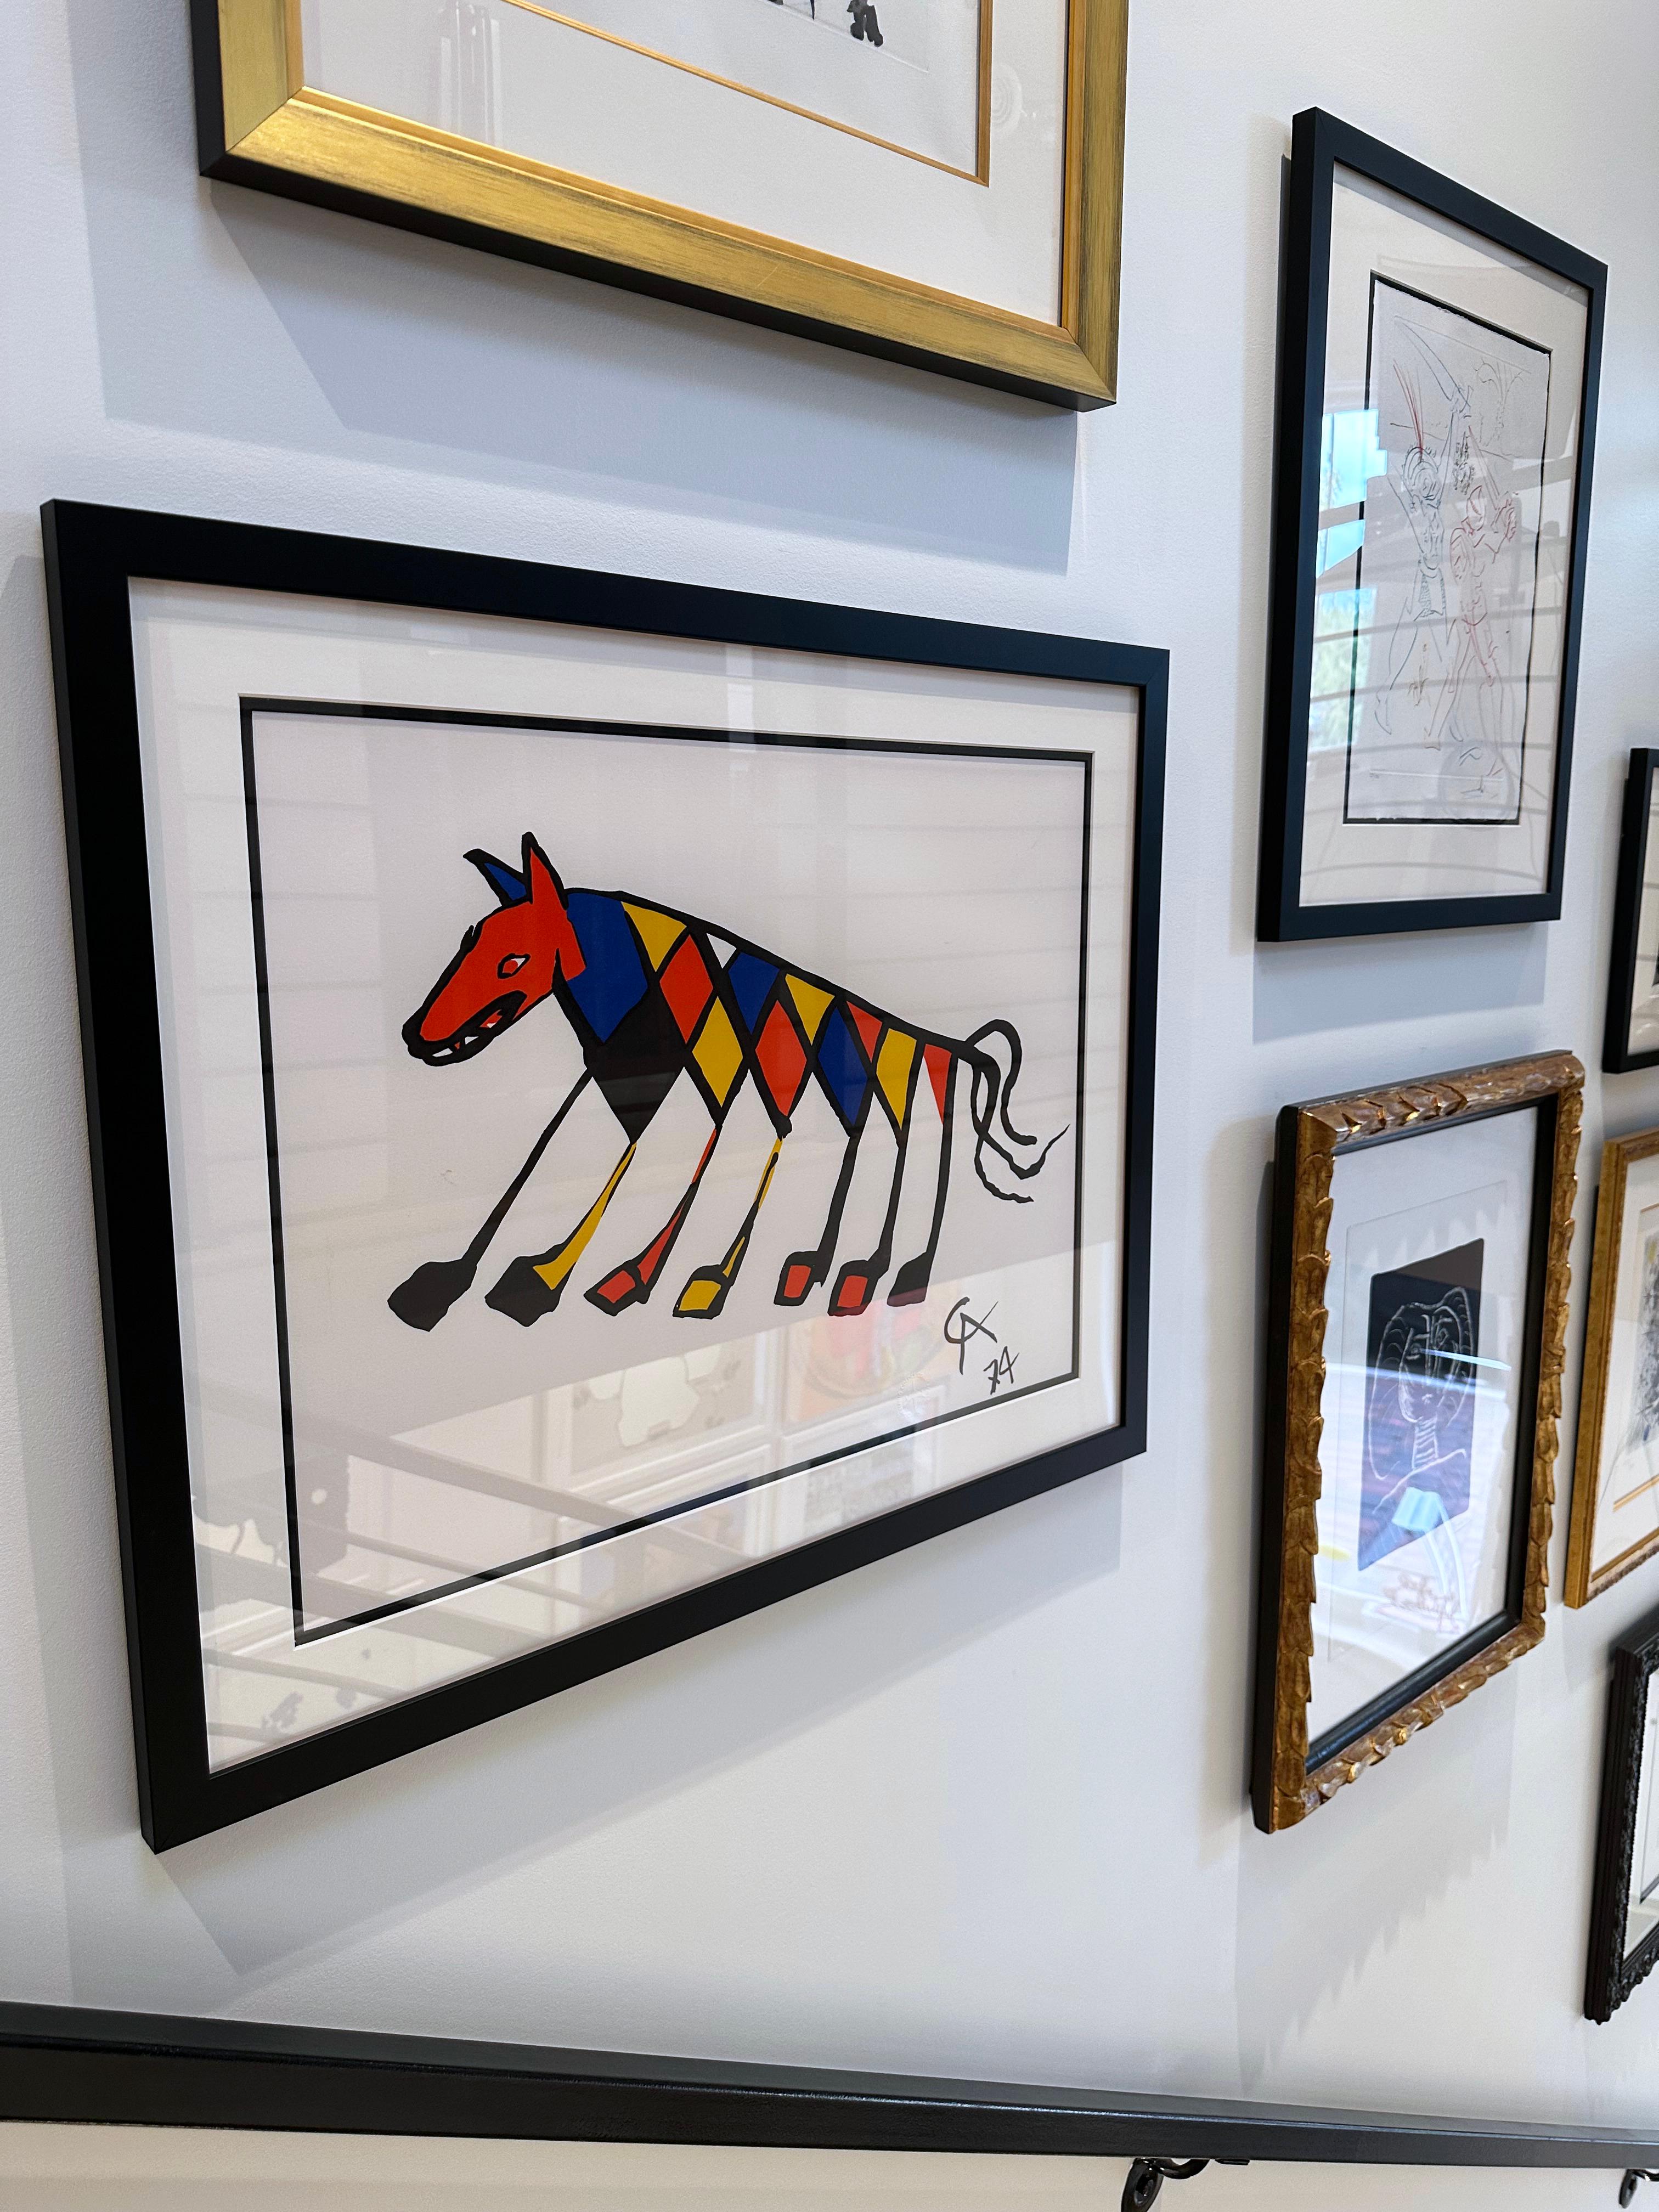 Artiste : Alexander Calder
Titre : Beastie
Portefeuille : Flying Colors
Médium : Lithographie
Année : 1974
Édition : Ouverte
Taille du cadre : 27